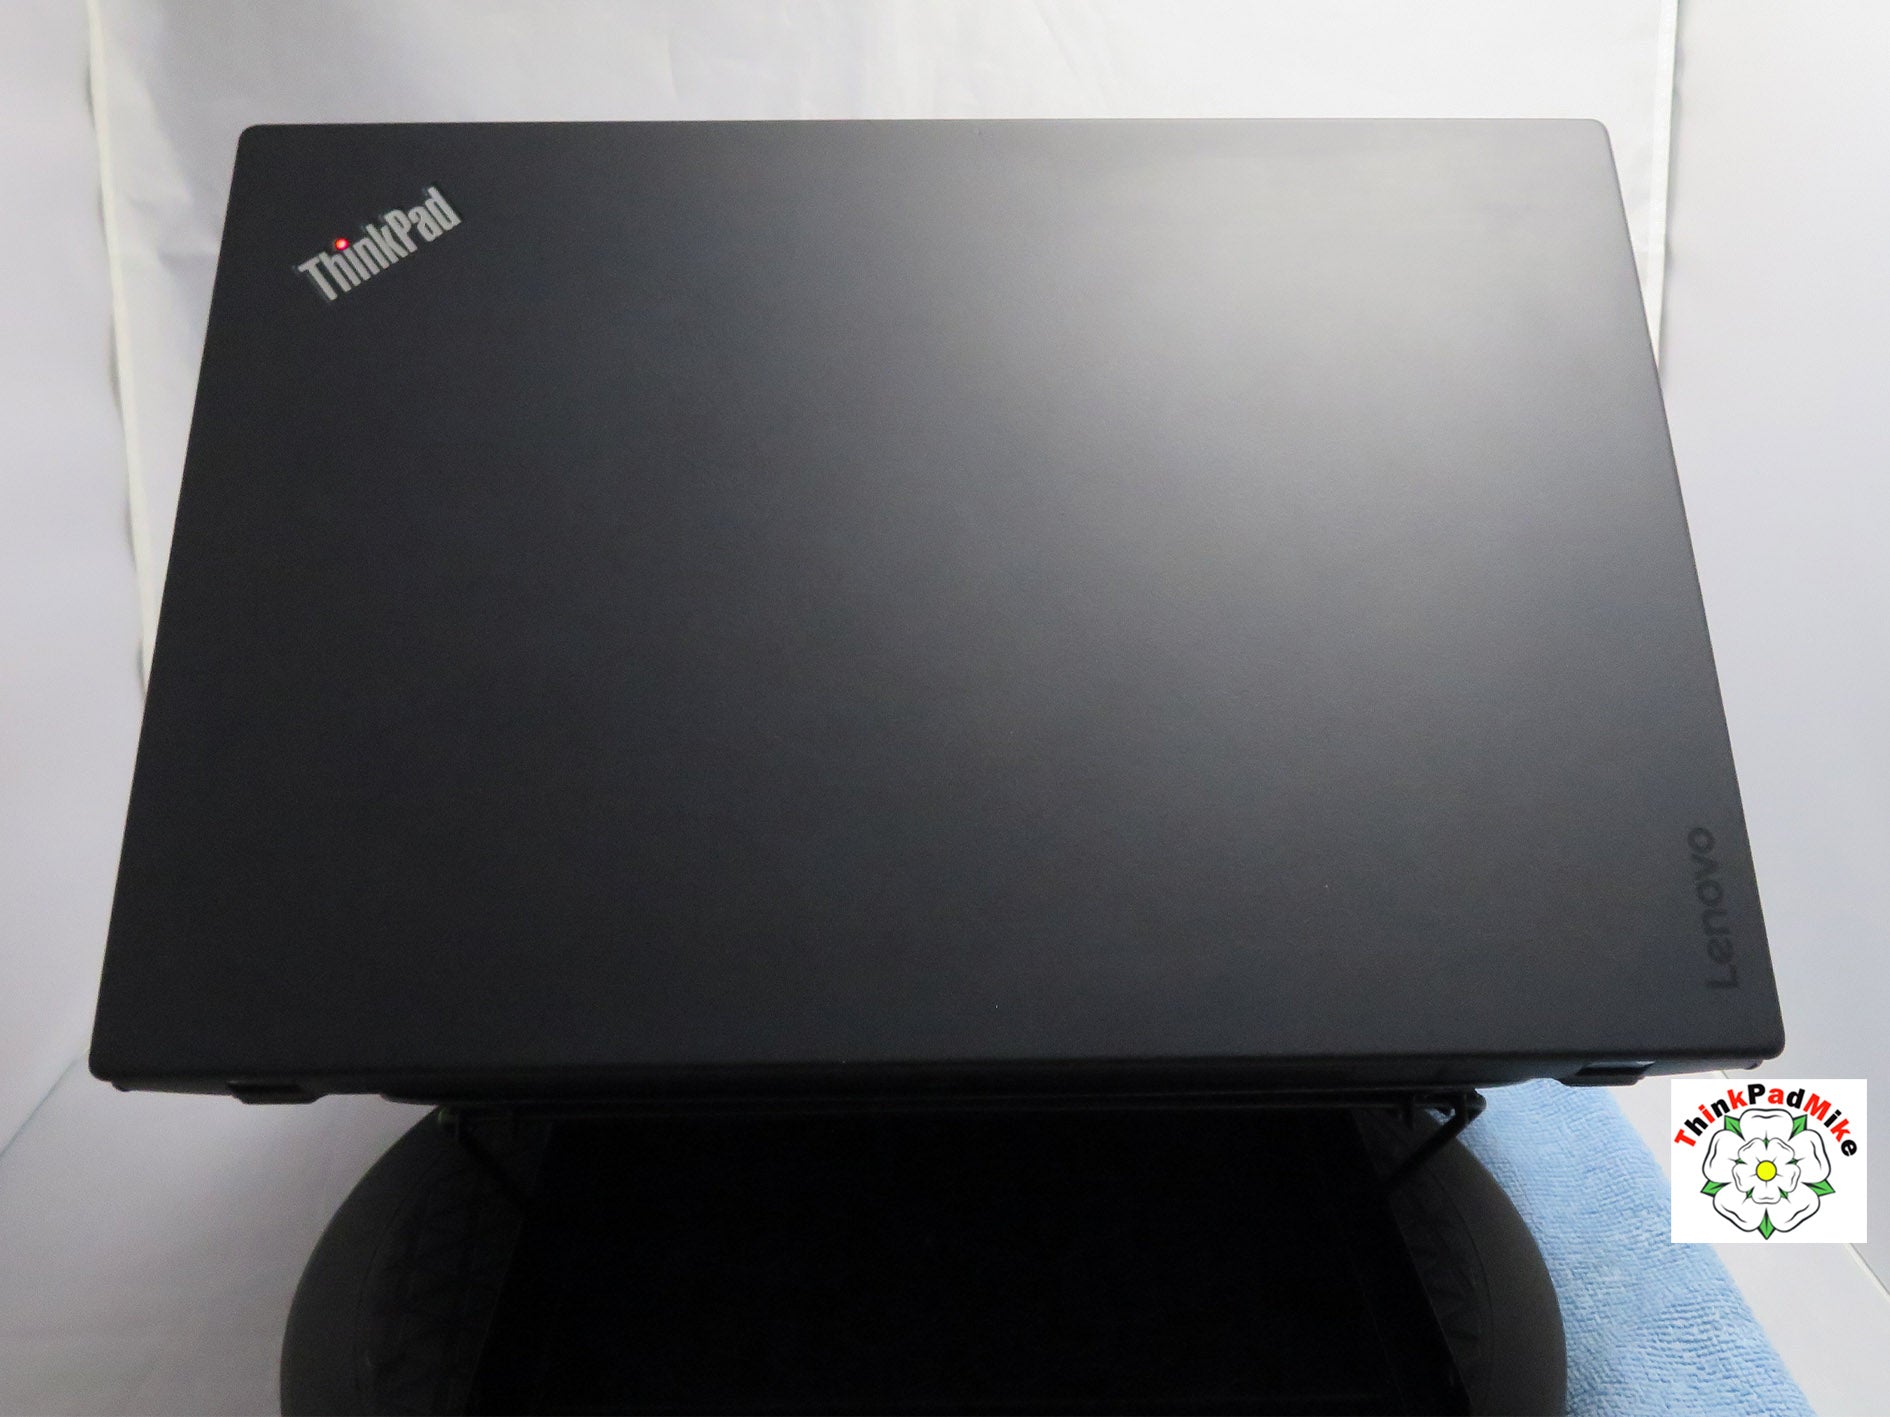 Lenovo ThinkPad x1 Carbon 5th Gen i7 7500U 2.7Ghz 8GB RAM 256GB 